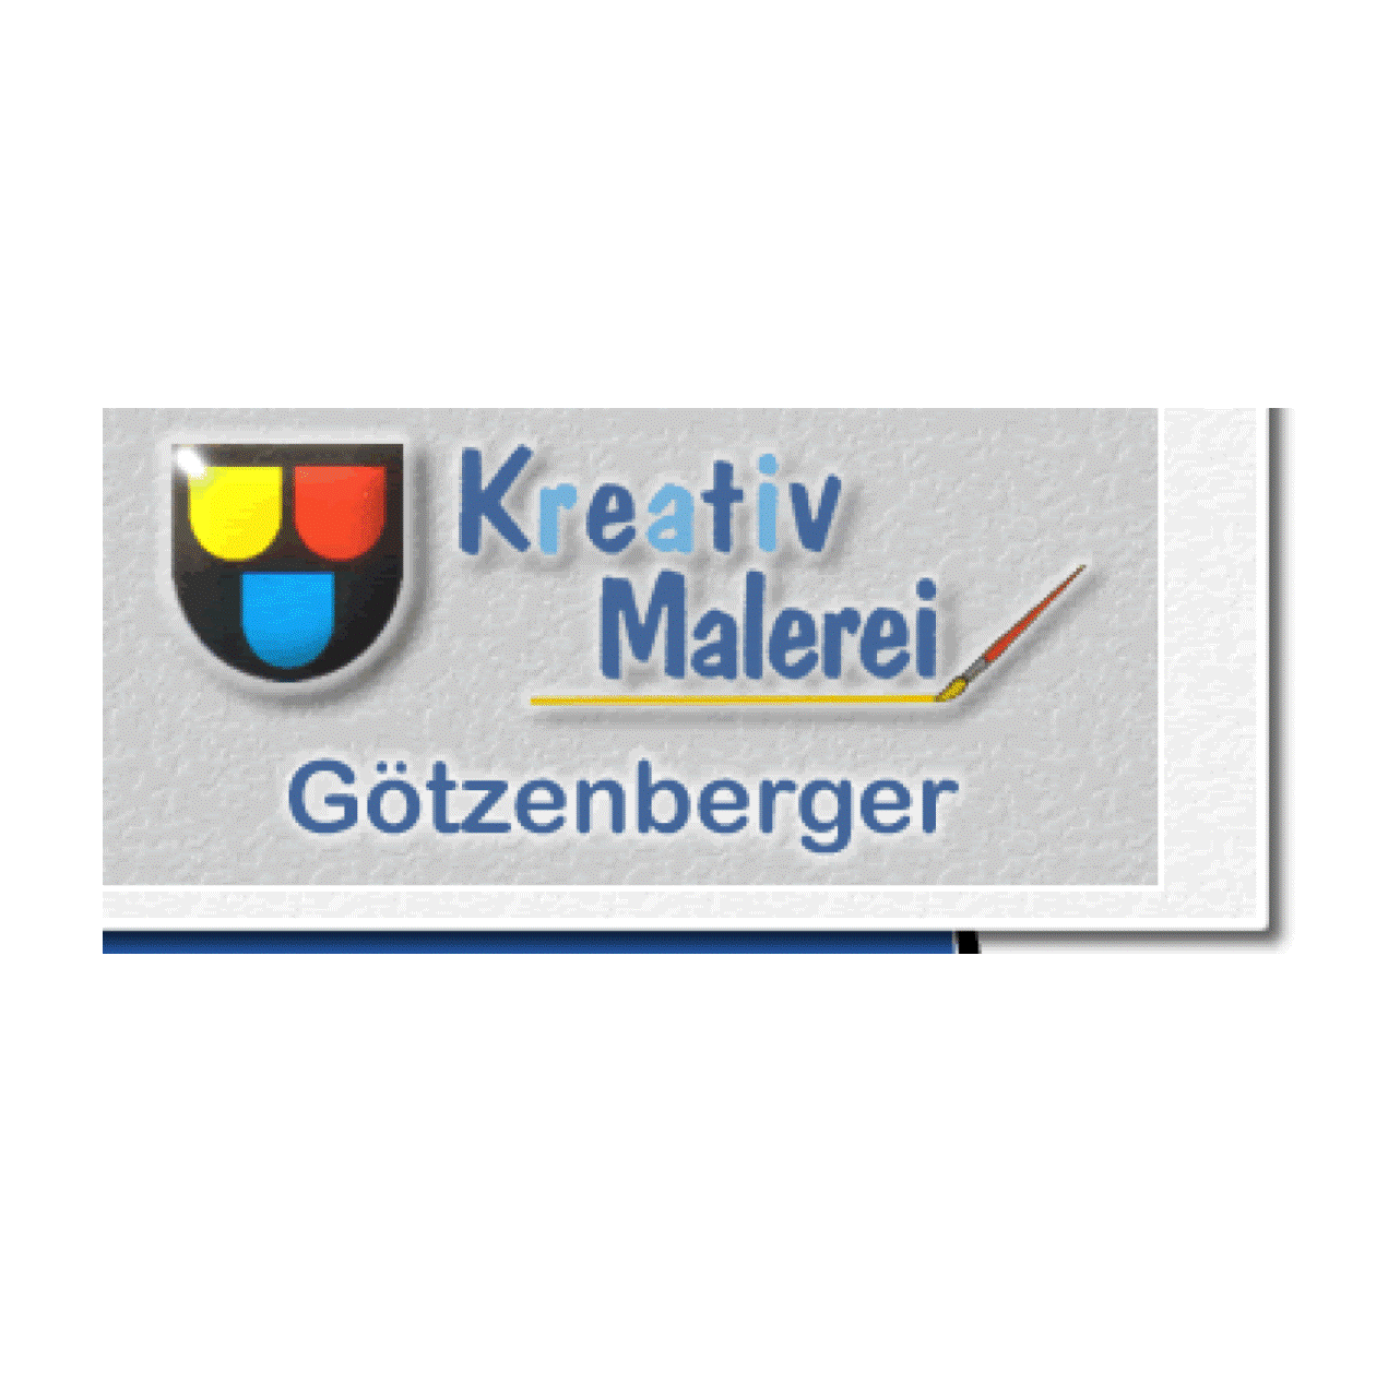 Malerei Götzenberger Logo